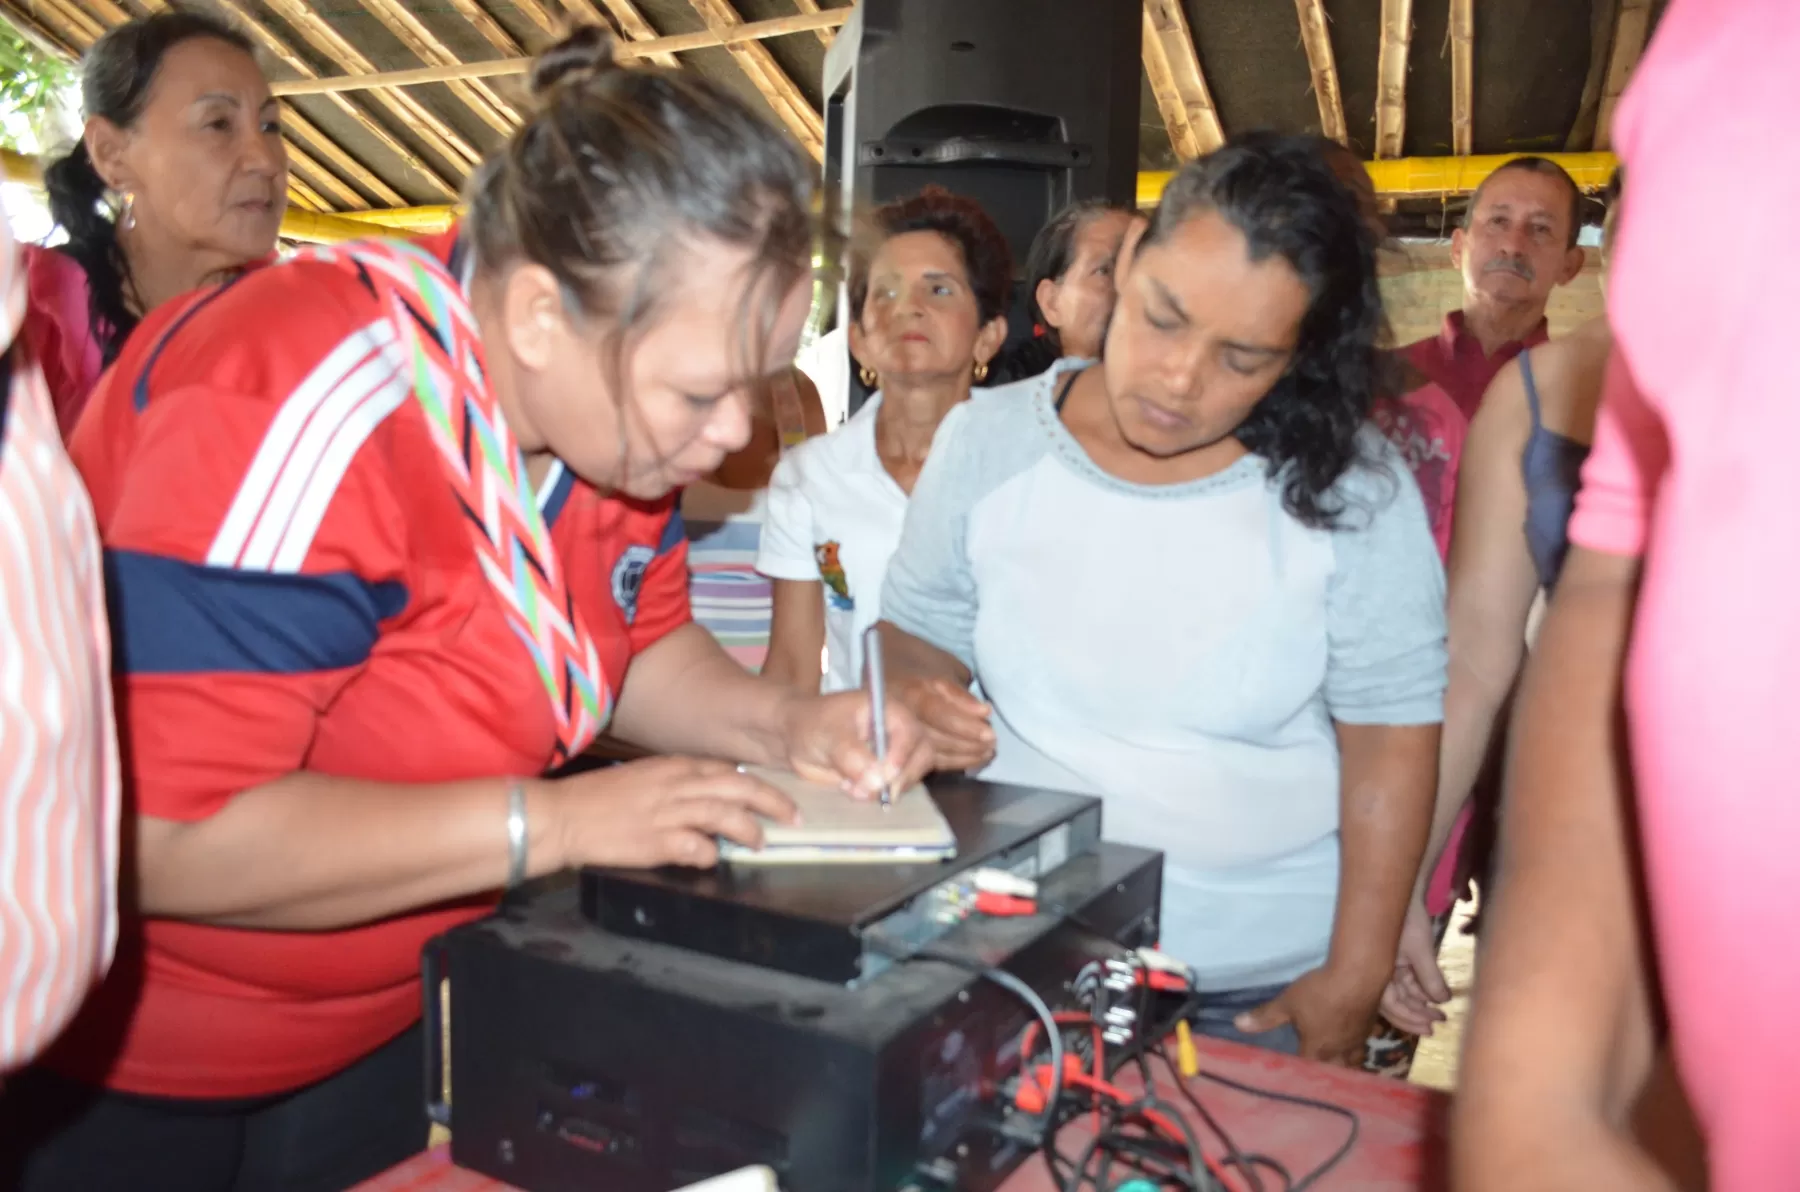 Vendedores de comidas acordaron abandonar sector invadido del malecón de Arauca. Alcaldía prometió construir nuevas con especificaciones que beneficien a la comunidad en general.